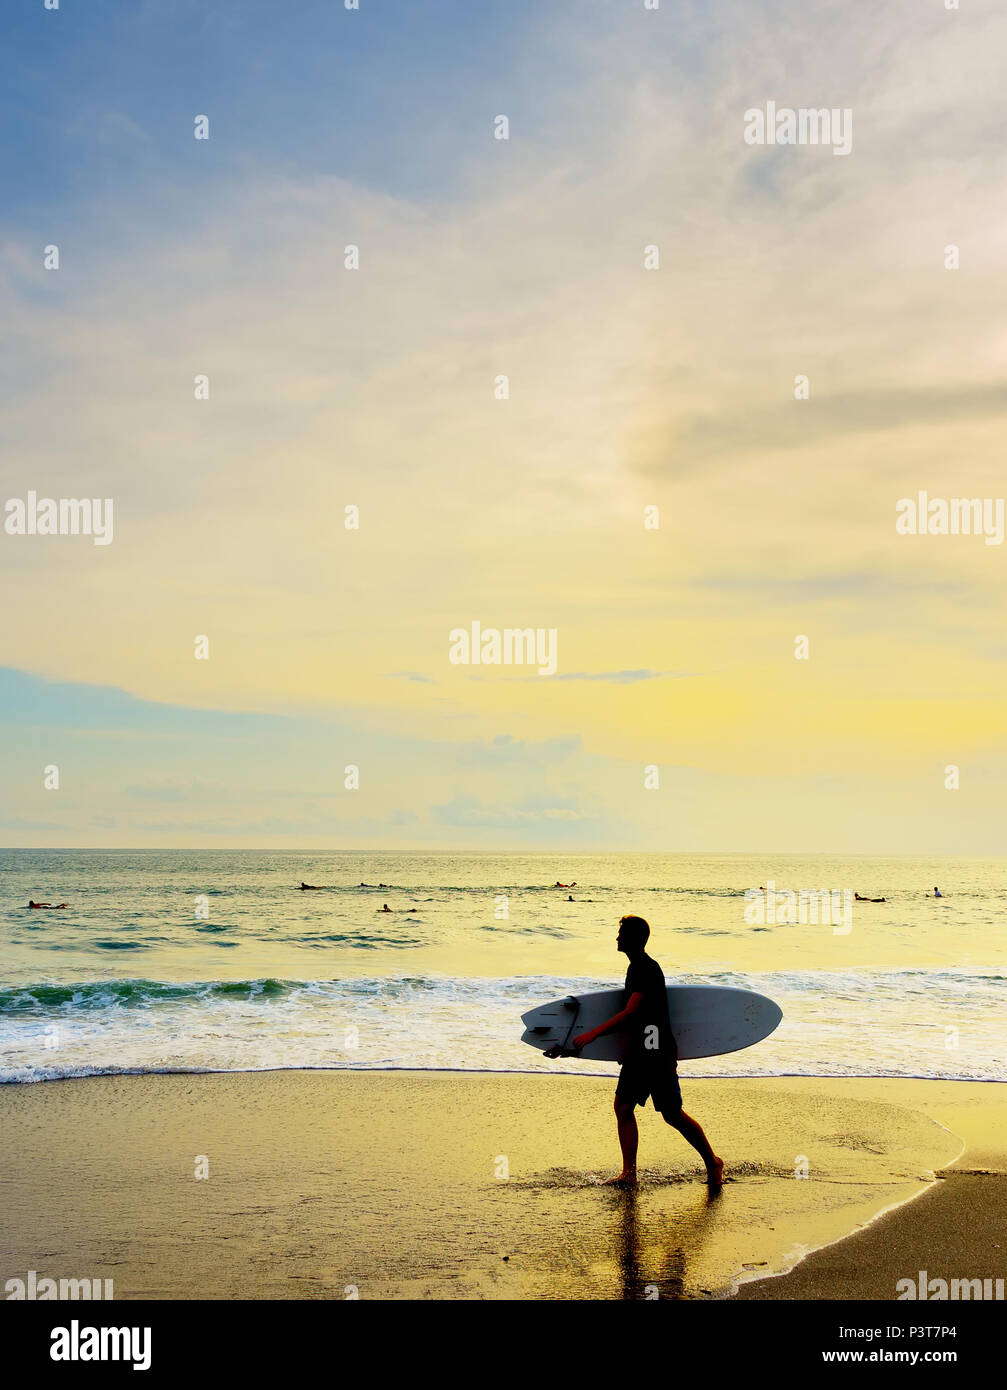 Surfer avec une planche de surf à pied sur la plage au coucher du soleil. L'île de Bali, Indonésie Banque D'Images